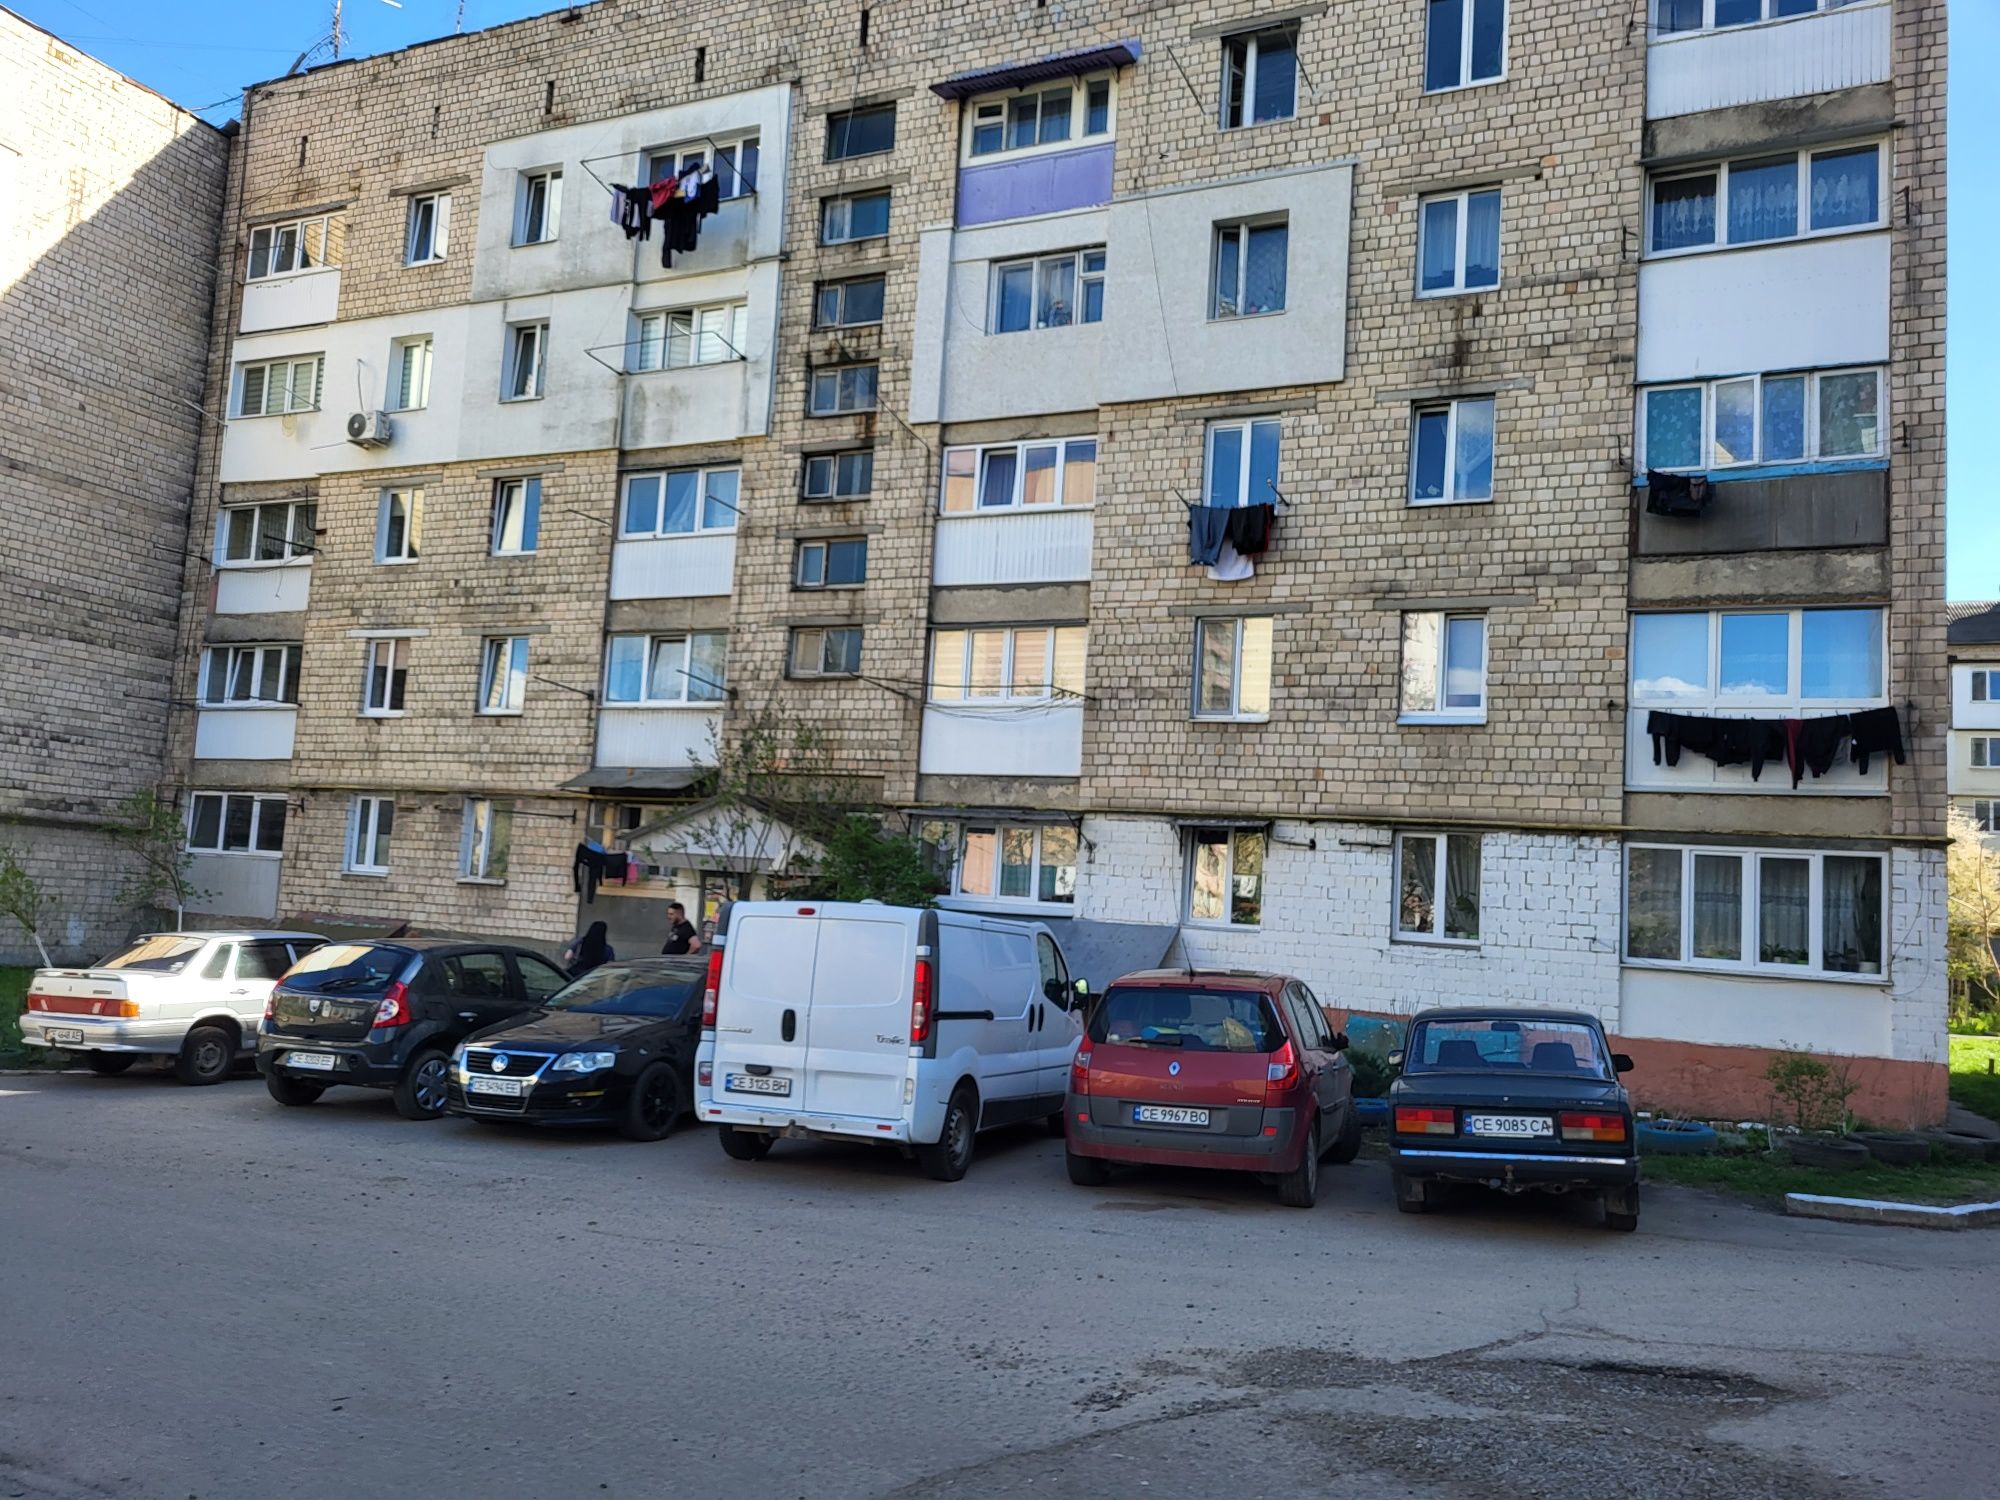 Дві 1-кімнатні квартири Комарова